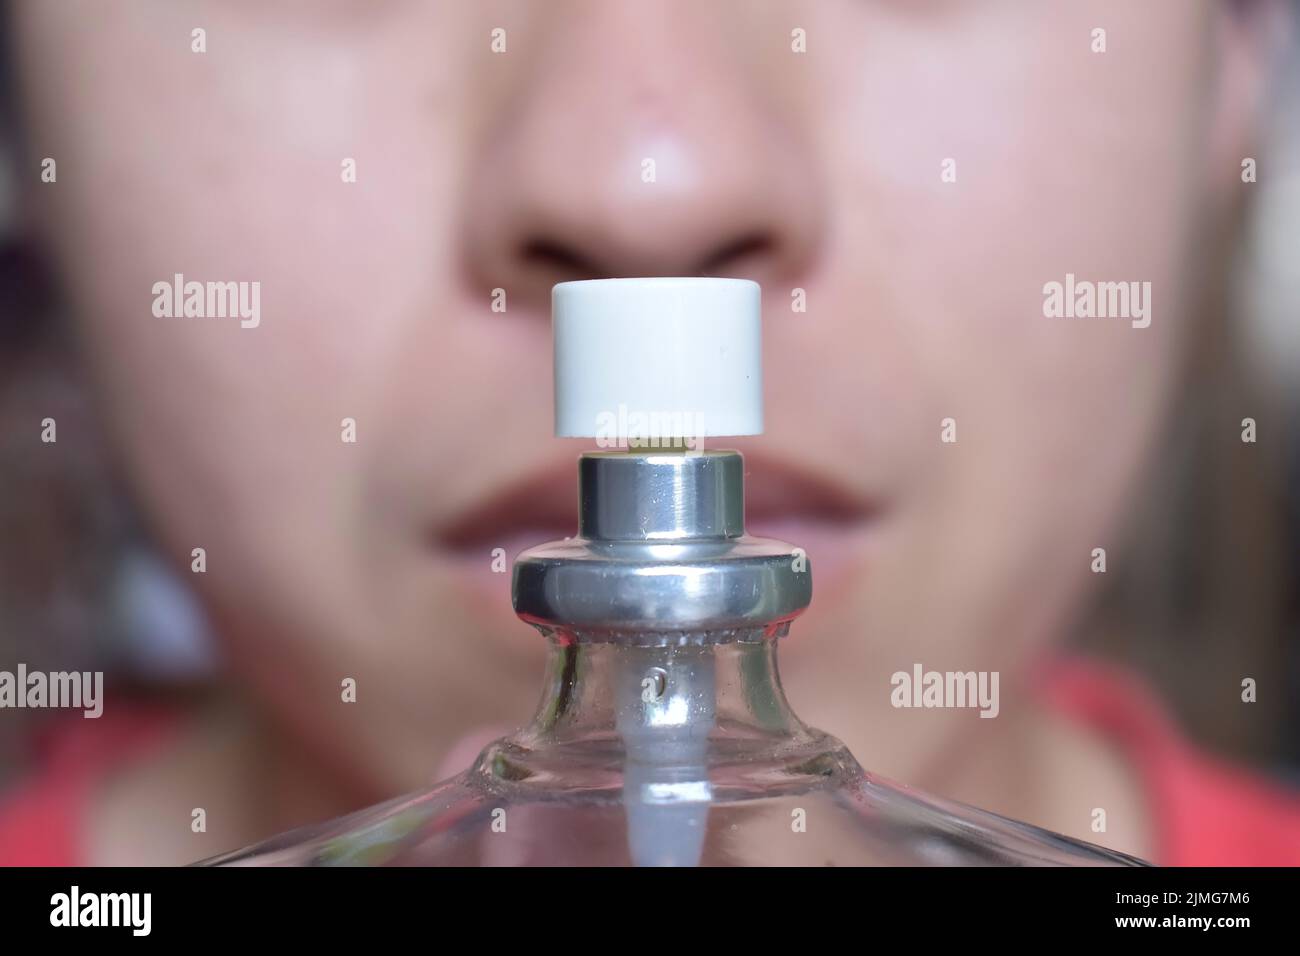 Sud-est asiatico, cinese e Myanmar giovane uomo con influenza fredda ottiene perdita di odore chiamato anosmia. Odora profumo. Foto Stock